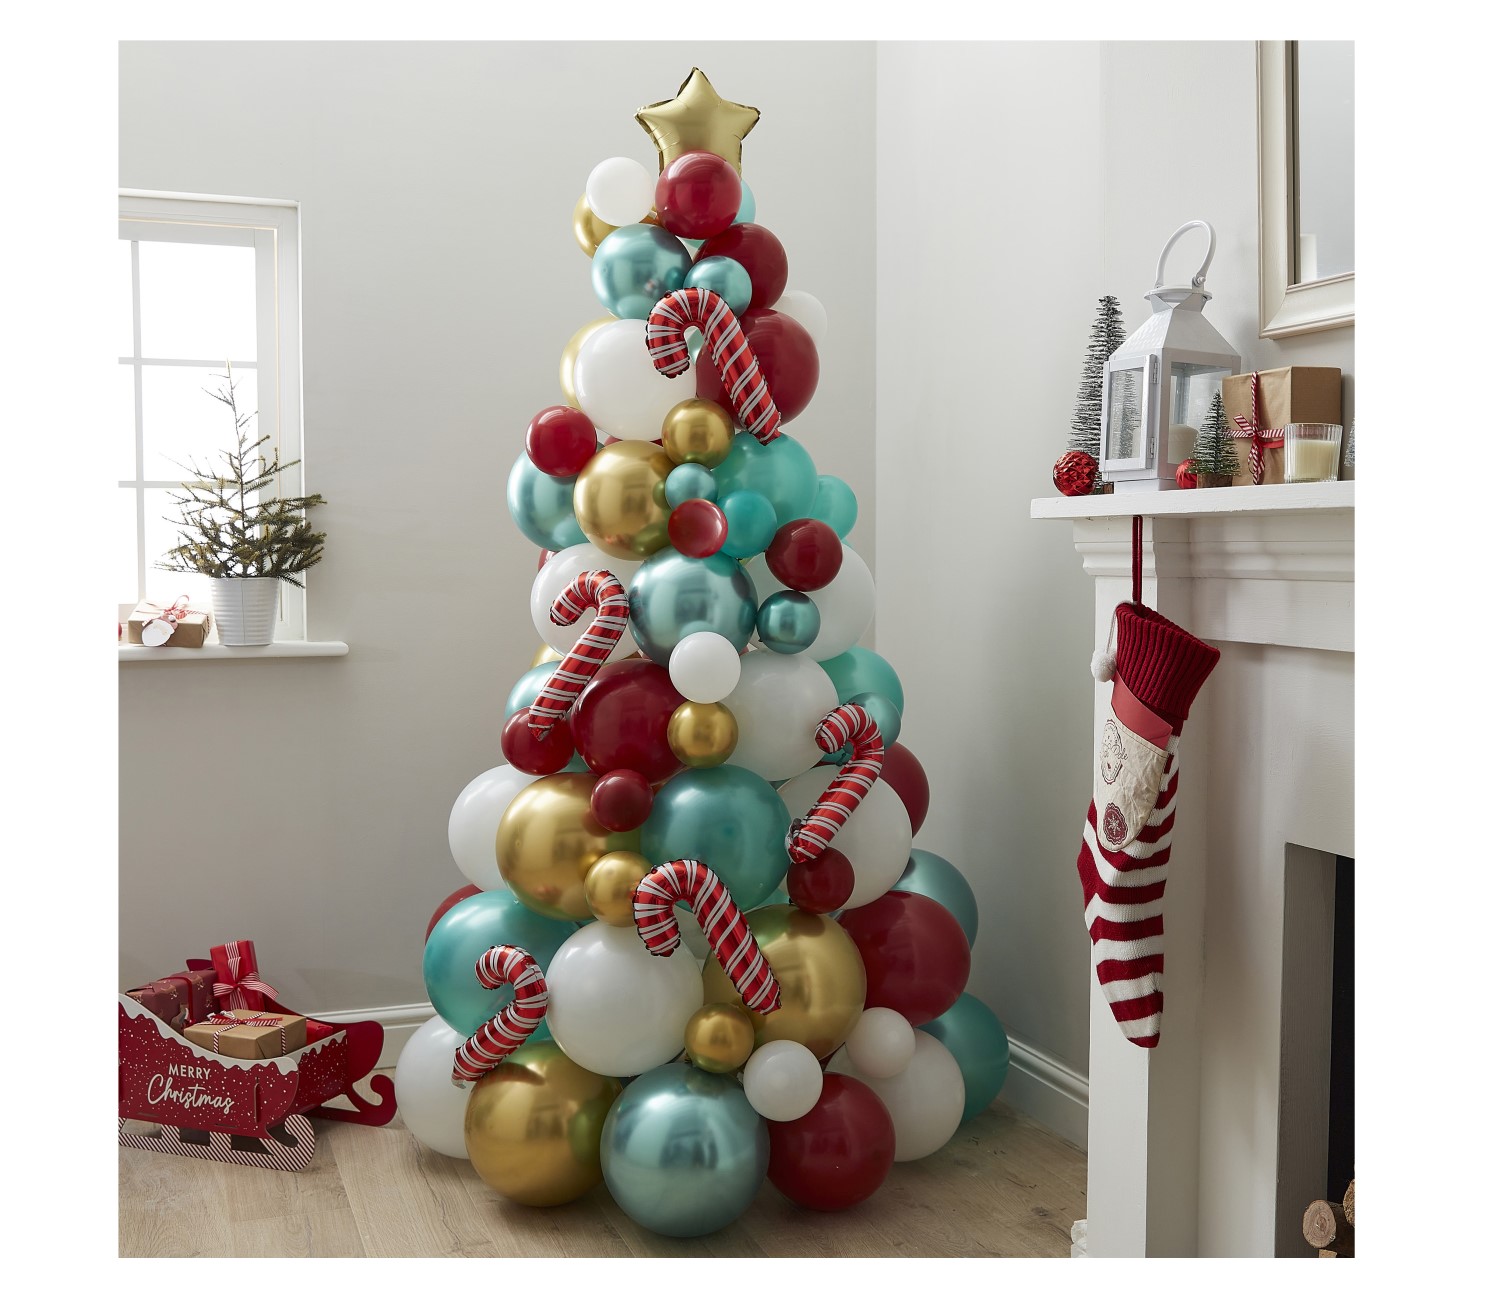 DIY σύνθεση με μπαλόνια για τα Χριστούγεννα με το Χριστουγεννιάτικο δέντρο στολισμένο με γλυφιτζούρια